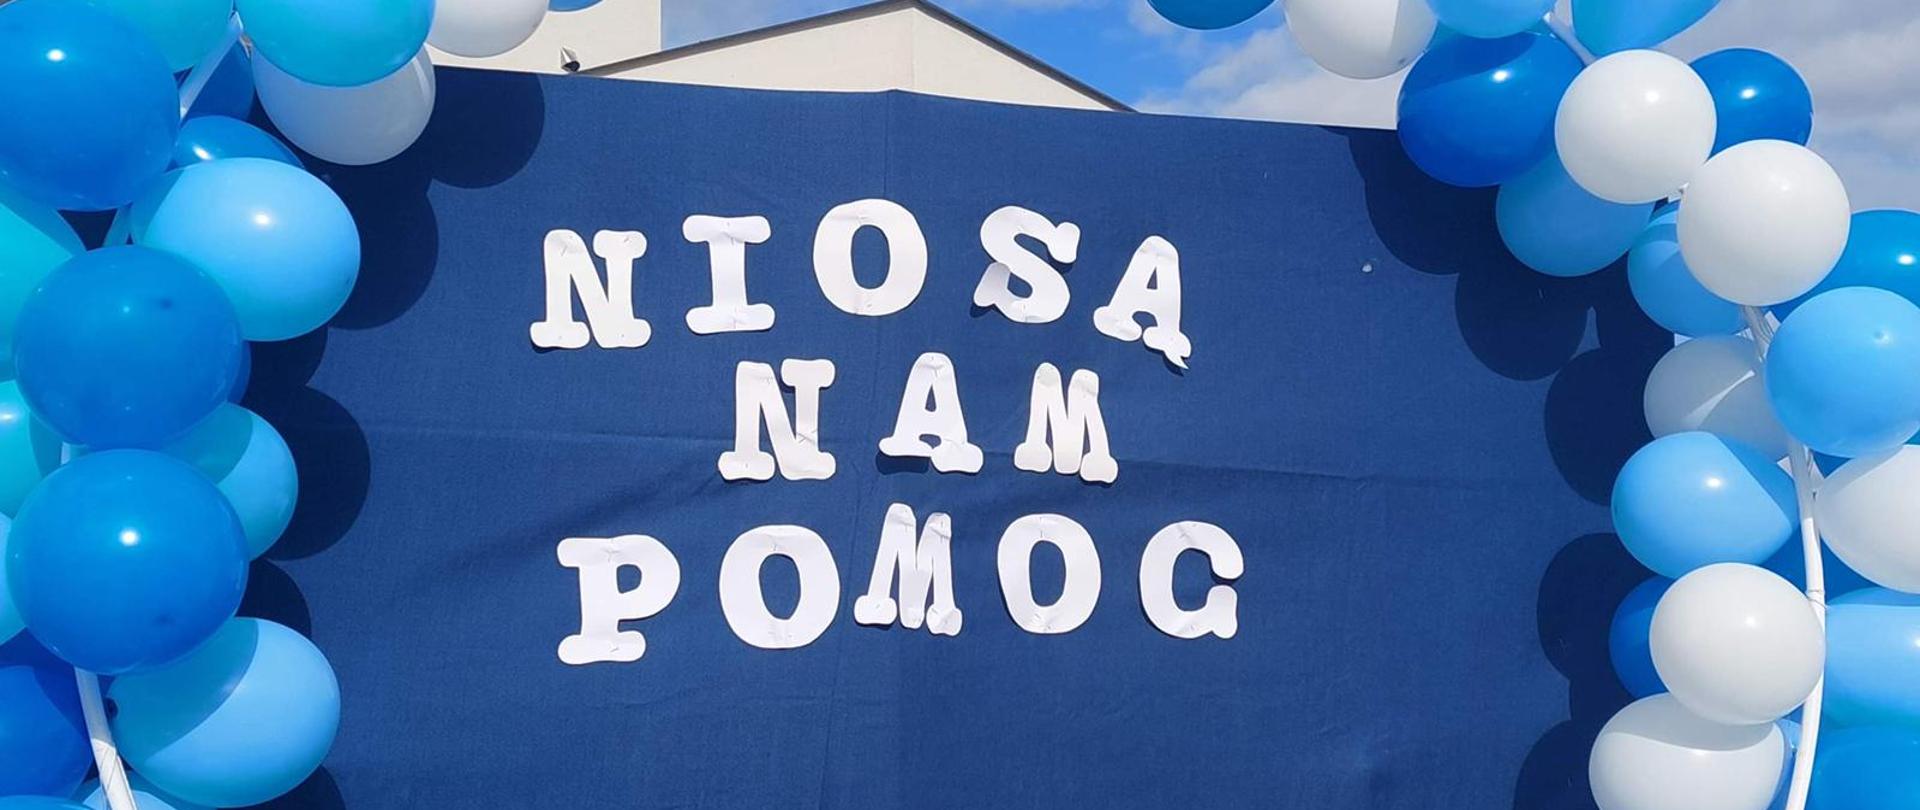 Zdjęcie przedstawia napis "Niosą nam pomoc" otoczony biało-niebieskimi balonami.